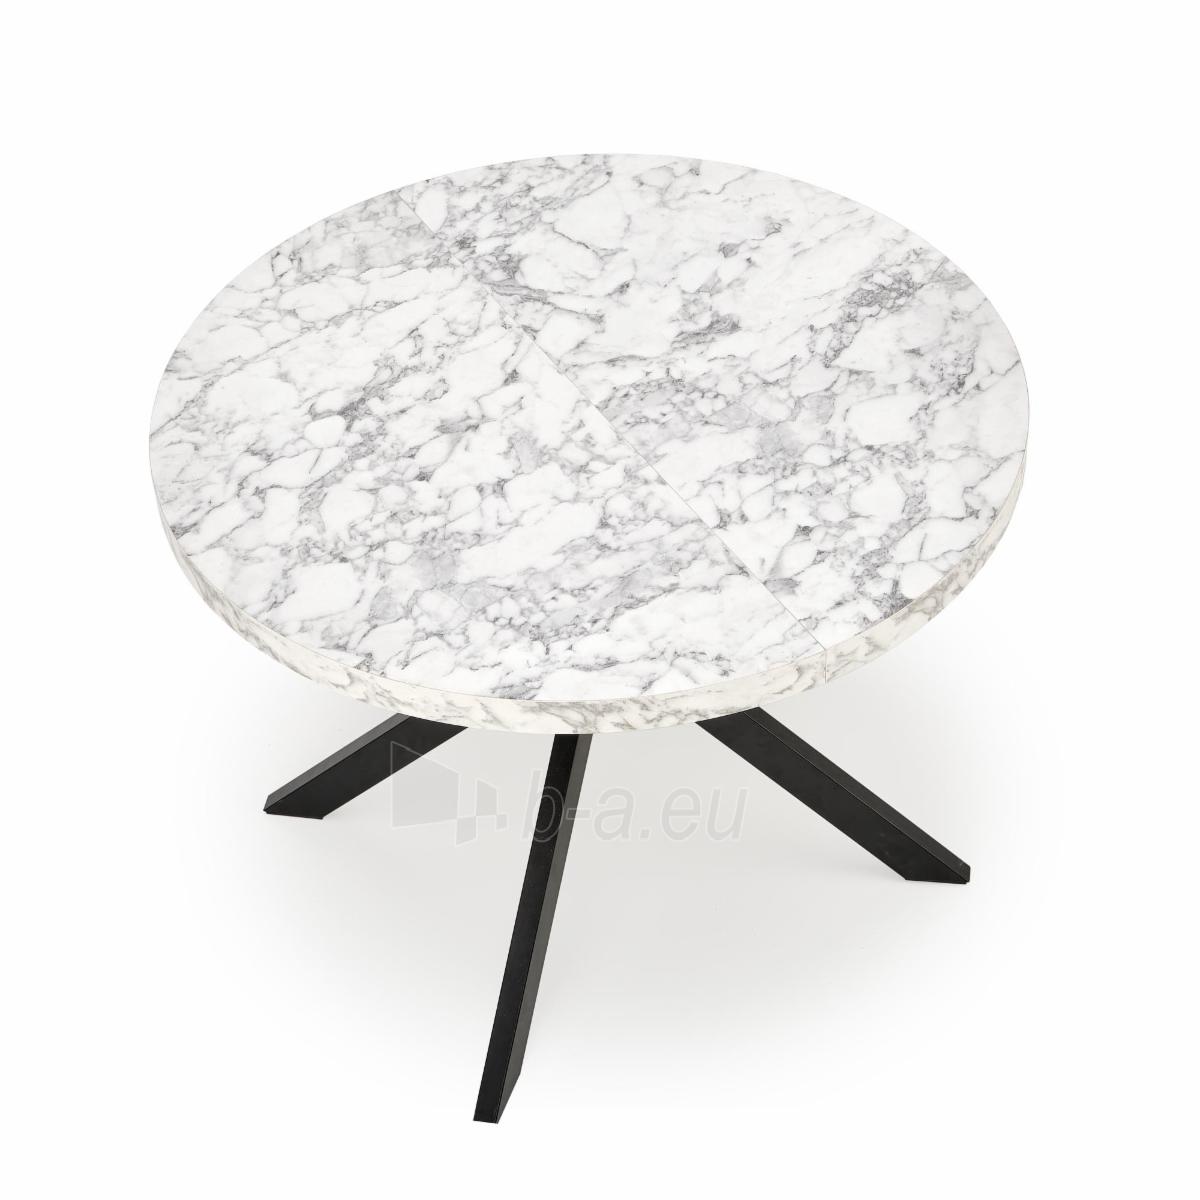 Industrinio stiliaus valgomojo stalas Peroni (with pop-up) white marmuras / juoda paveikslėlis 5 iš 13